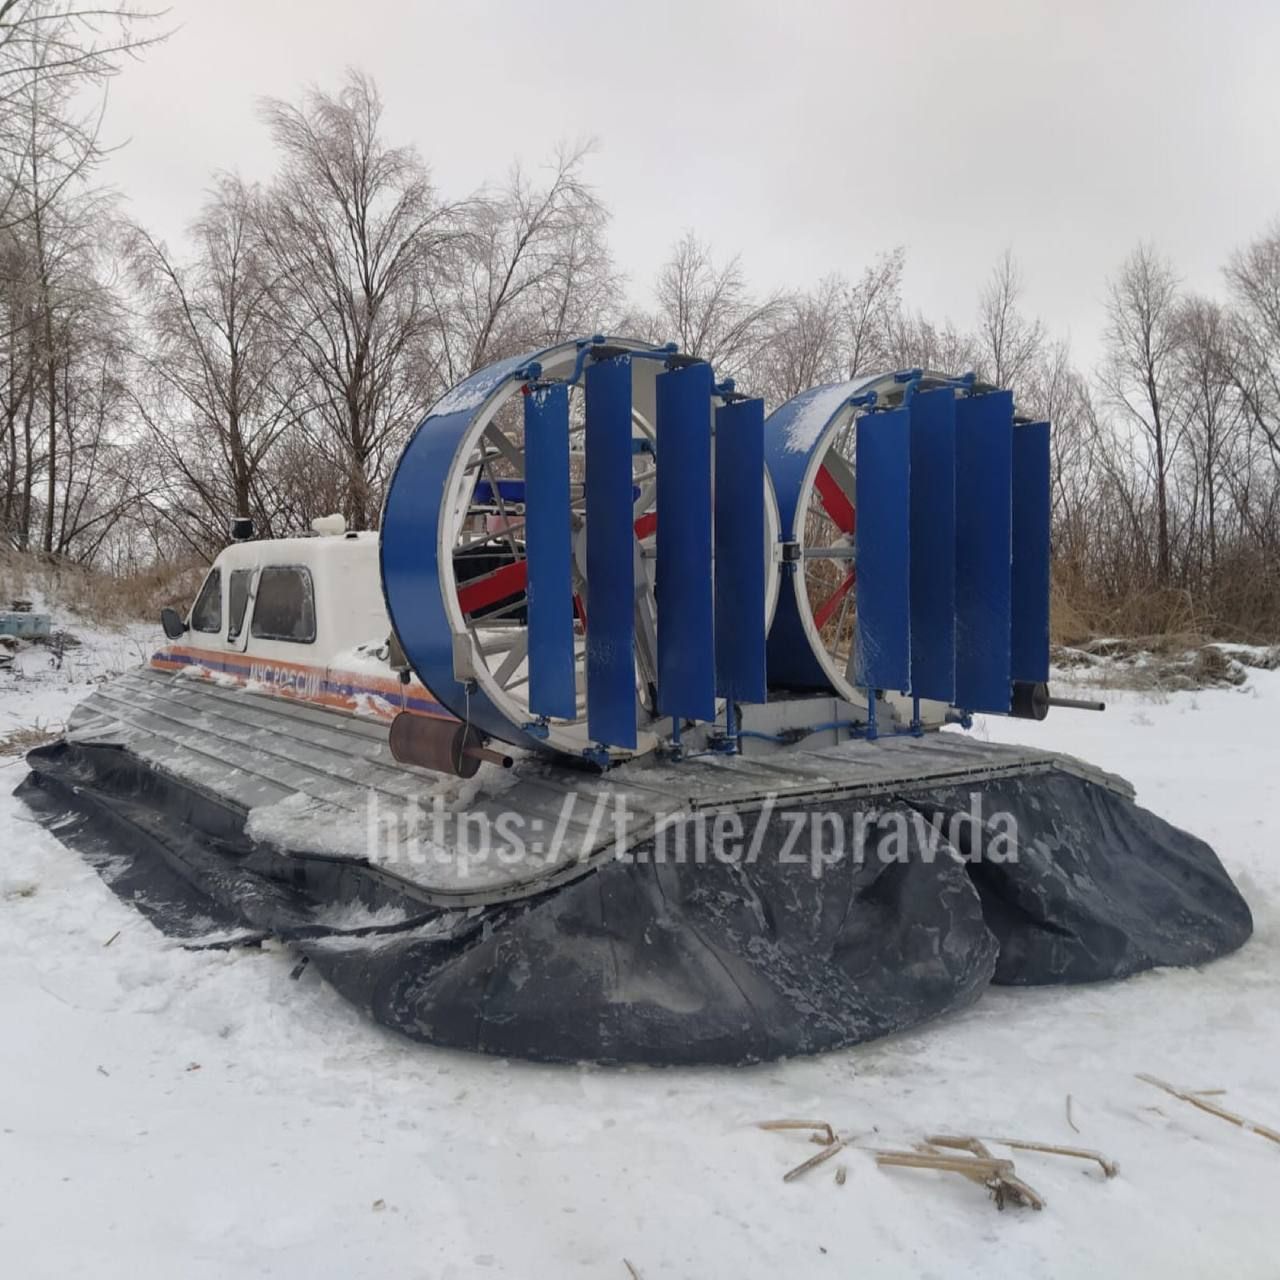 В Зеленодольском районе на дежурство встало судно на воздушной подушке